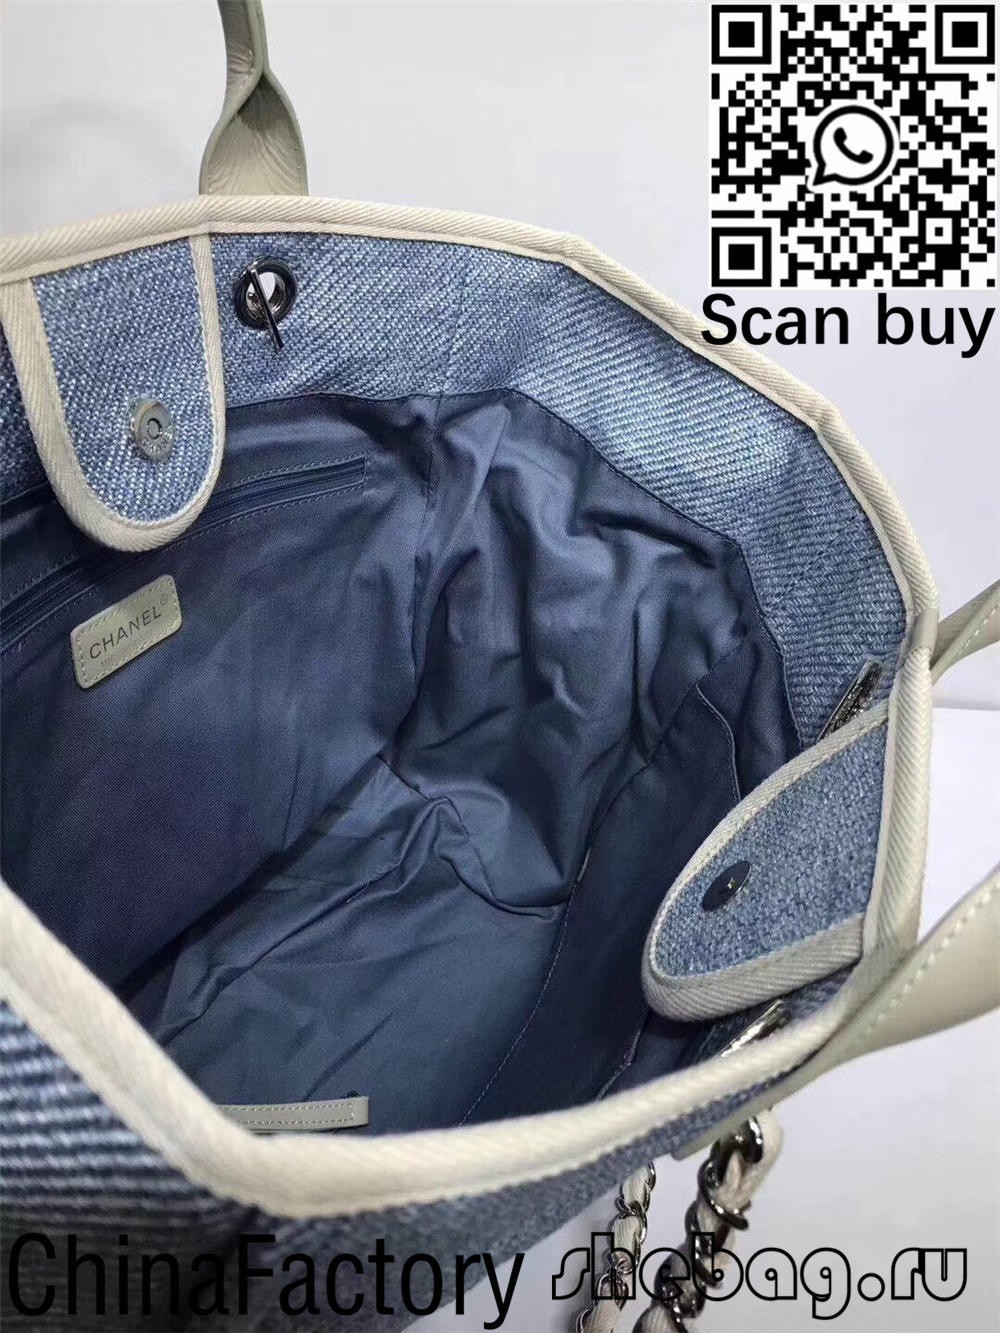 Plátená kabelka Chanel deauville najkvalitnejšia replika Dubaj (aktualizovaná v roku 2022) – online obchod s falošnou taškou Louis Vuitton najvyššej kvality, replika značkovej tašky ru